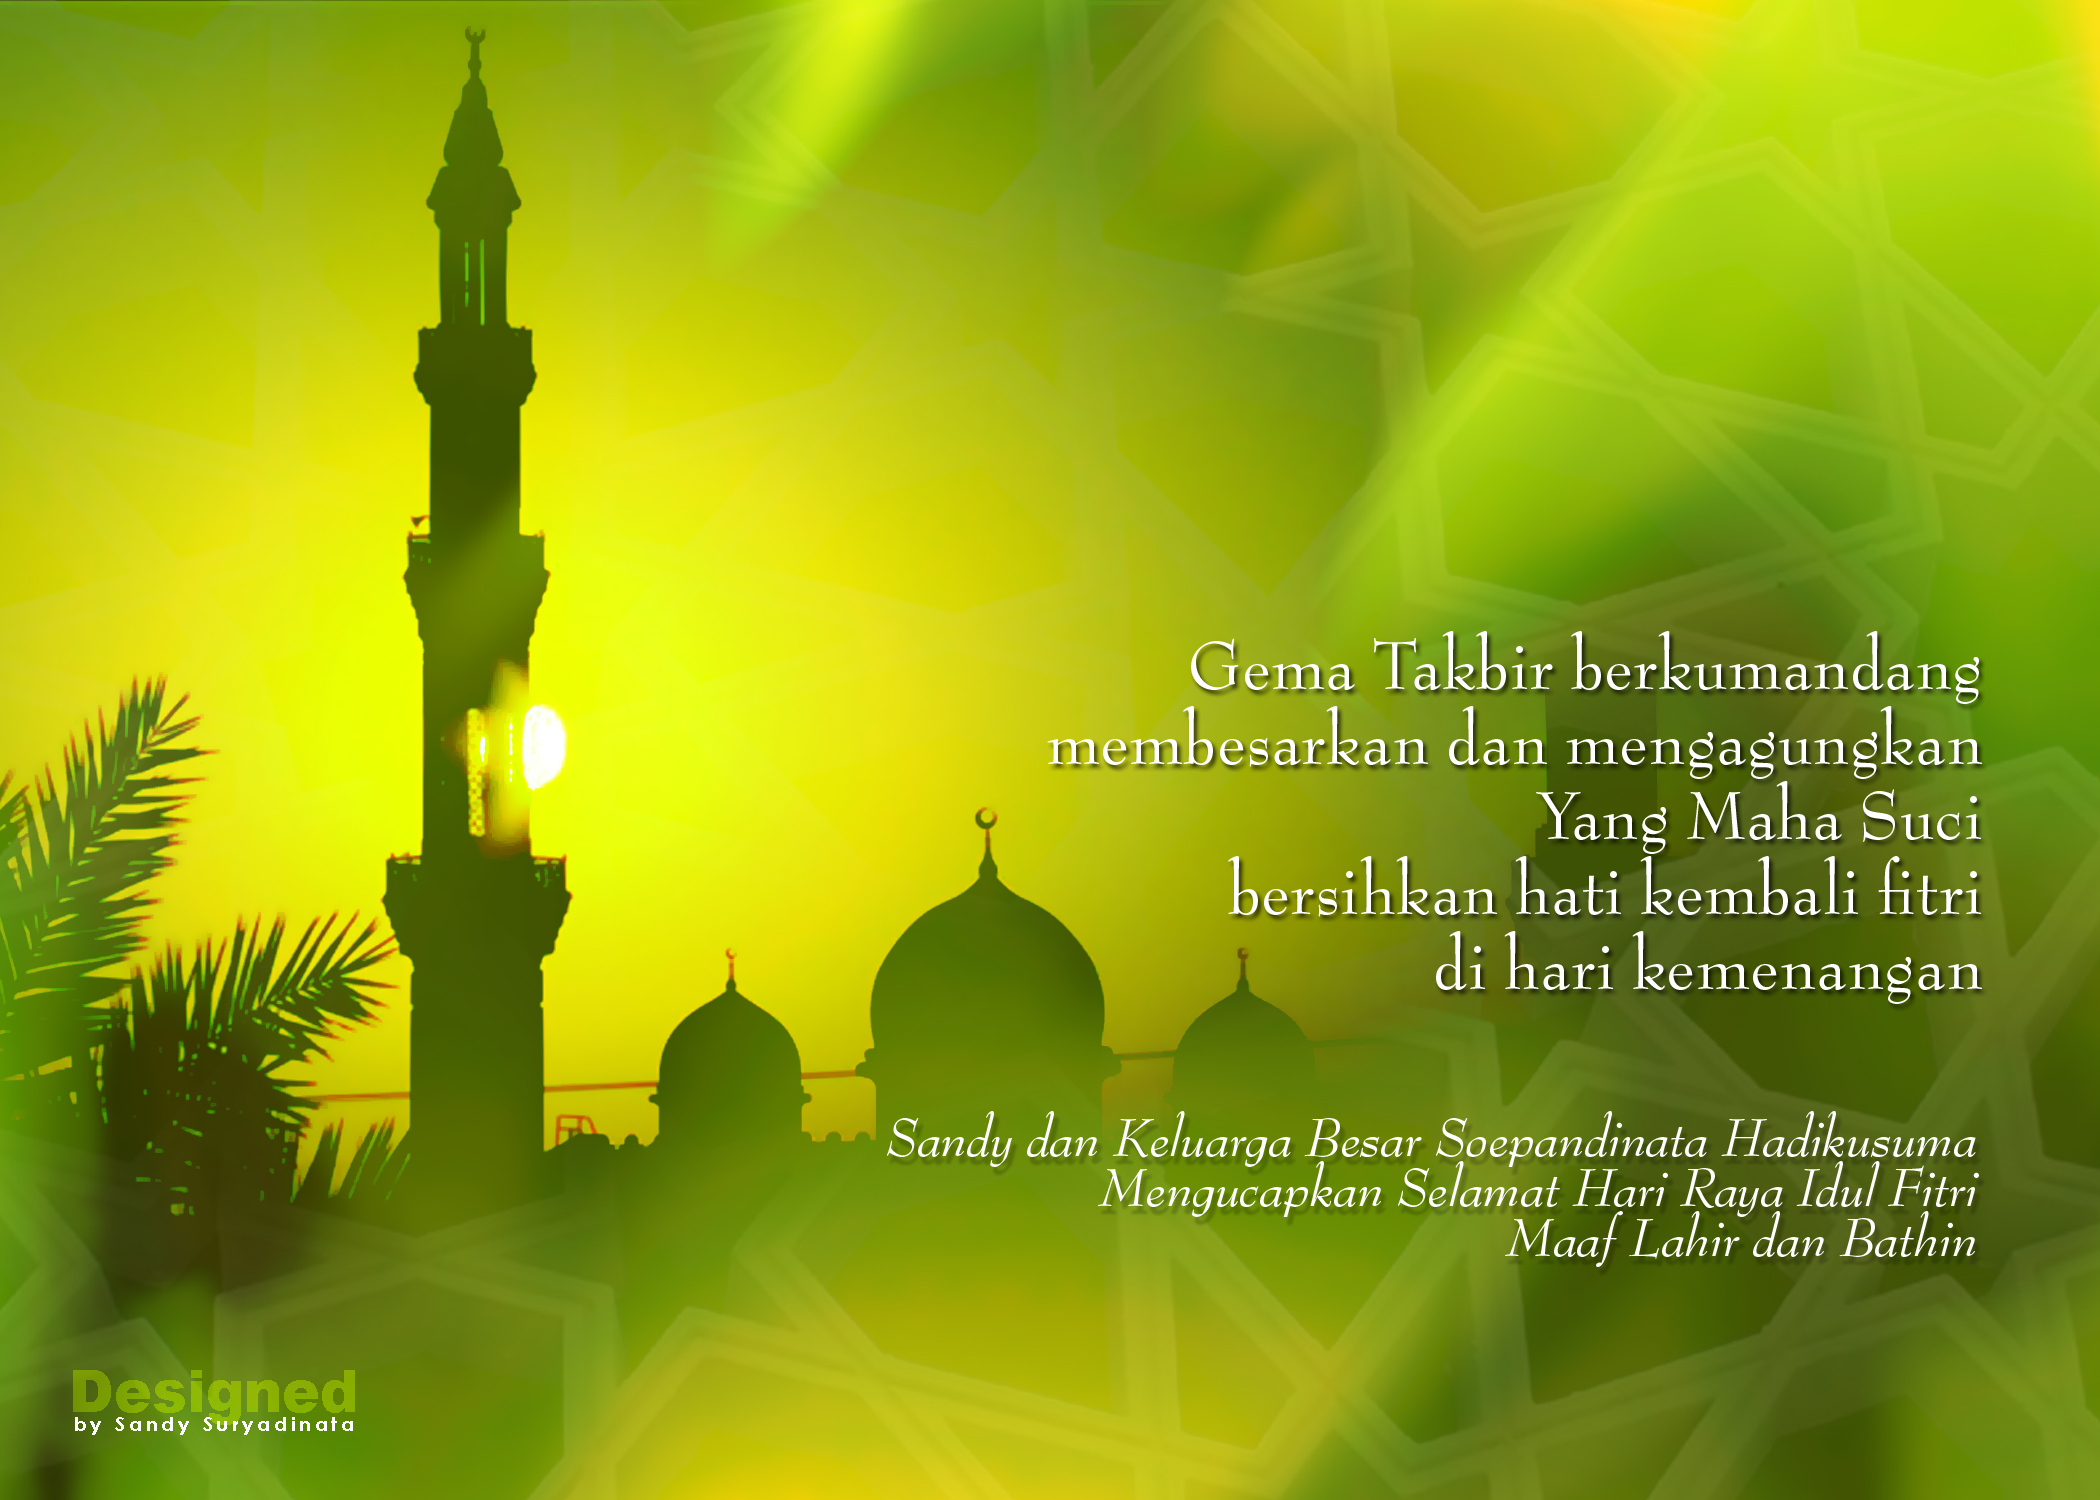 Kumpulan Gambar Ucapan Ramadhan Puasa Terbaru 2013